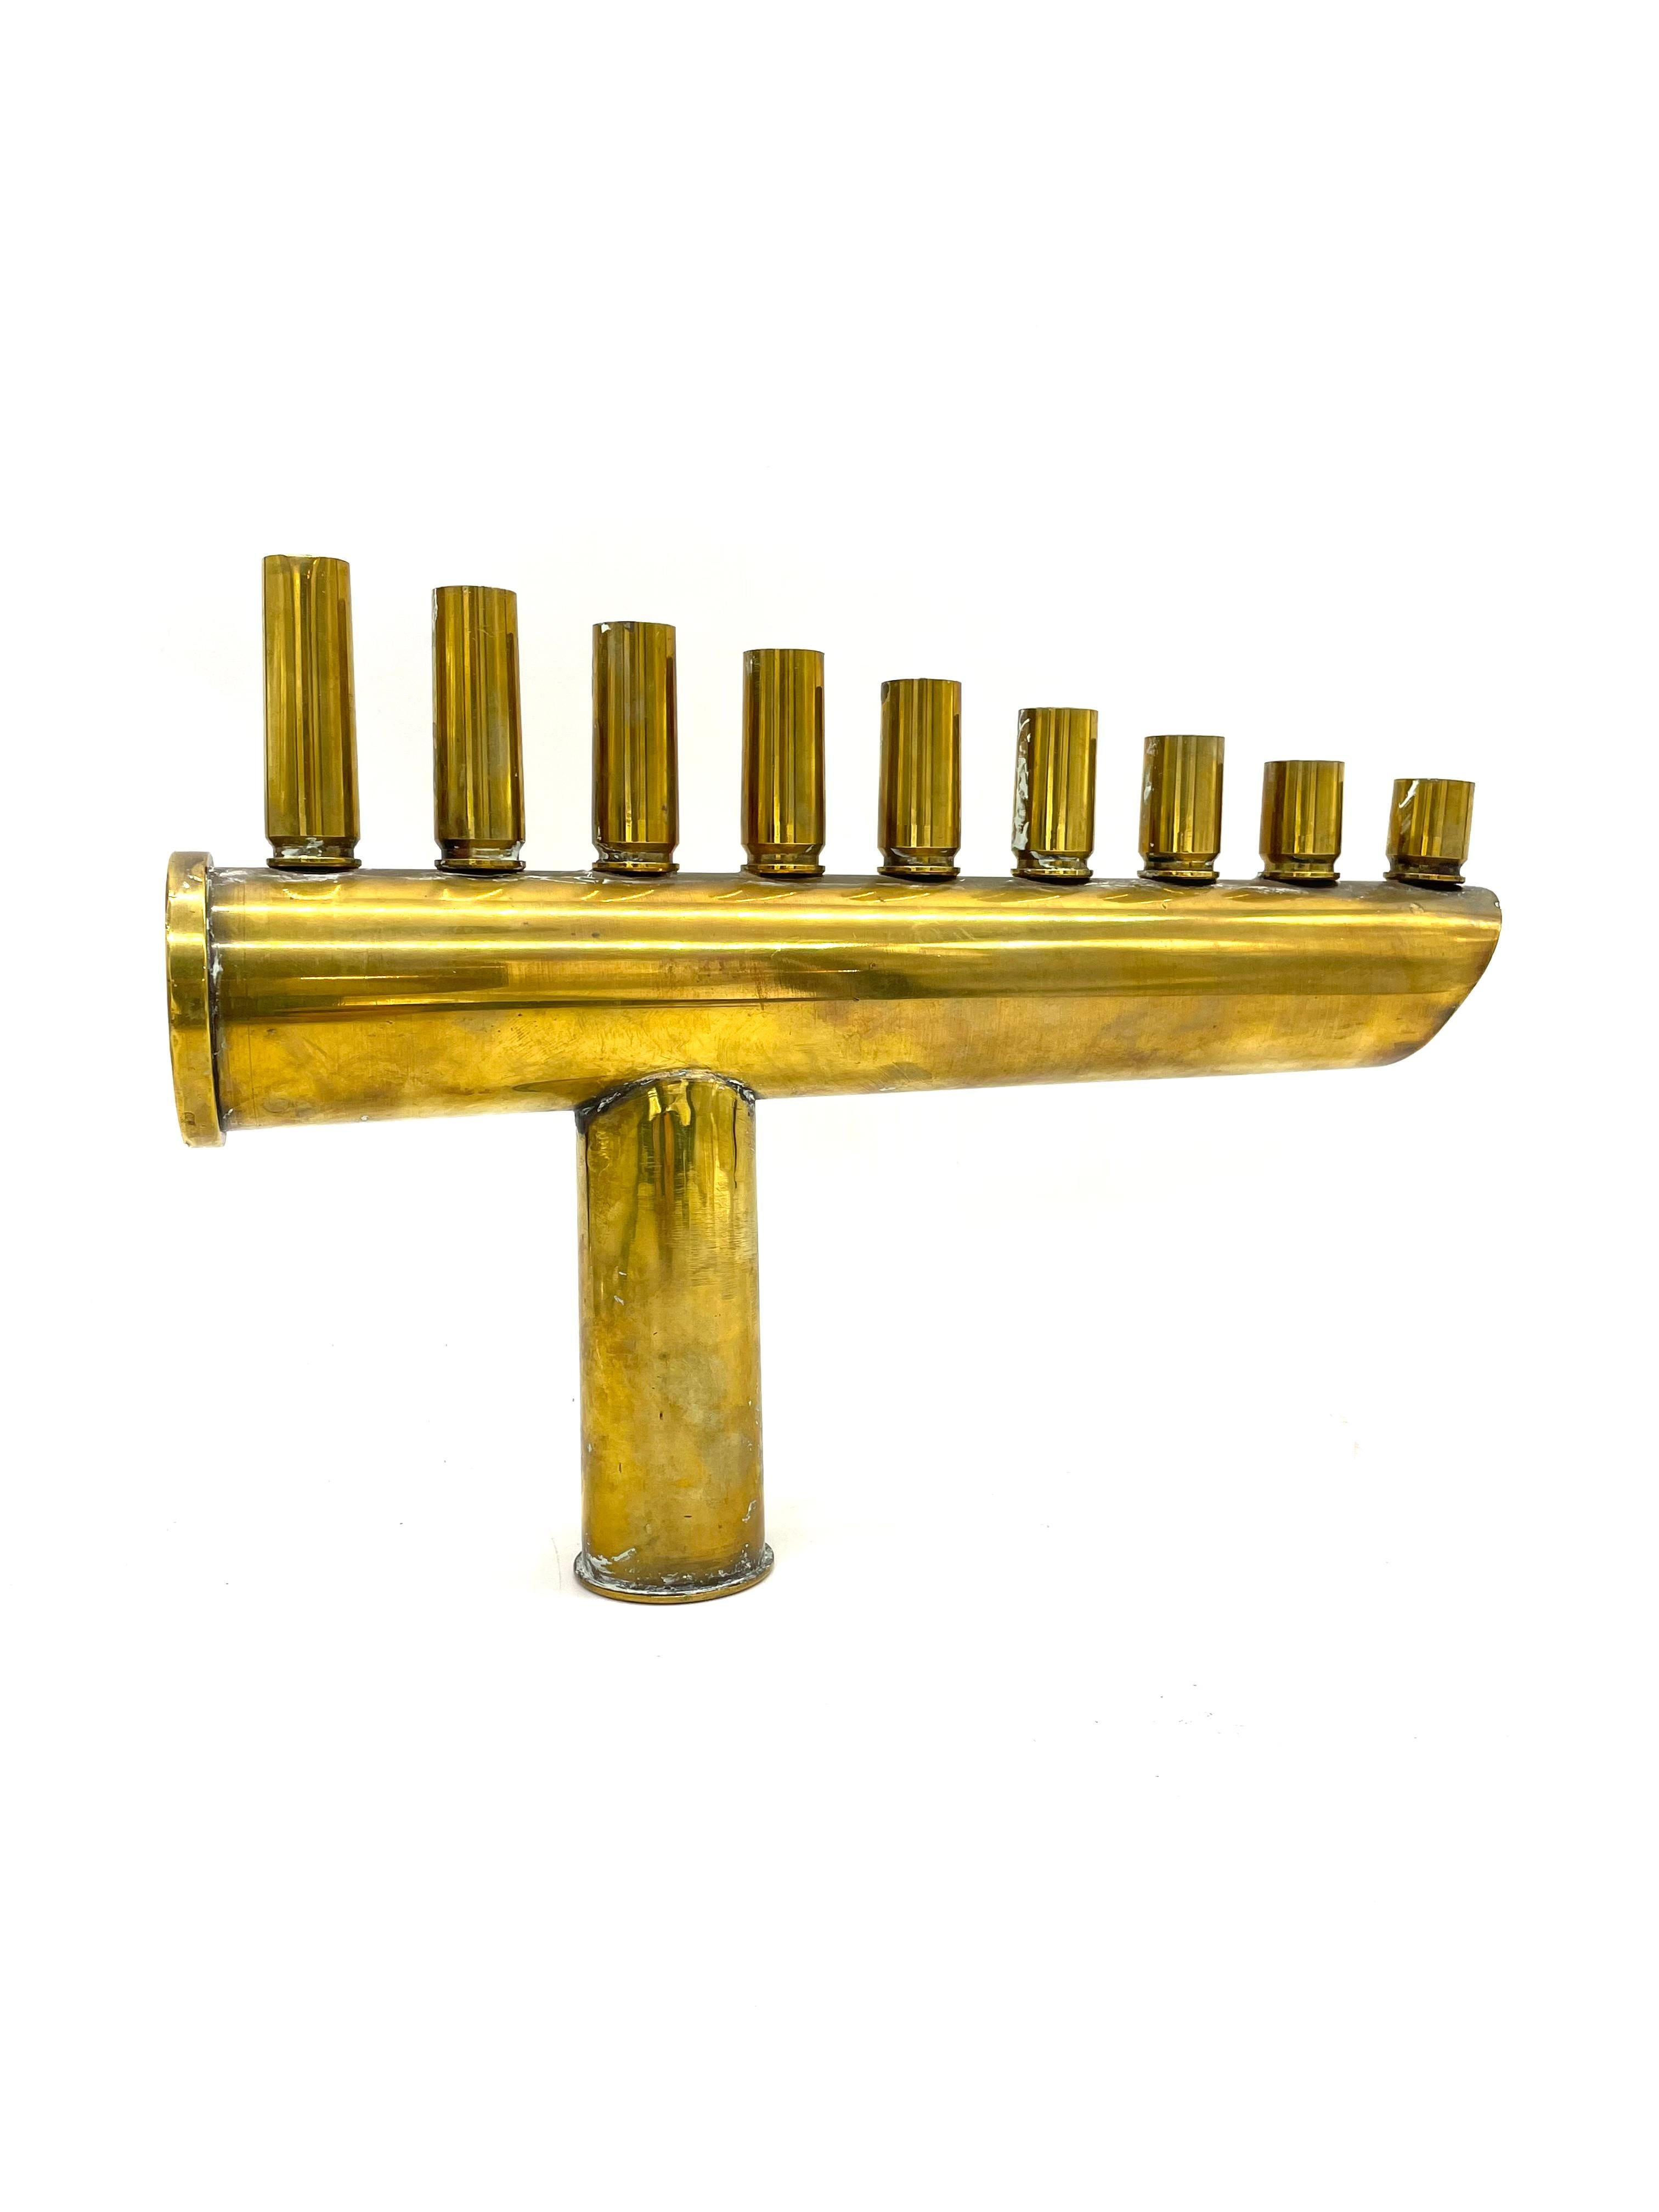 Eine Chanukka-Lampe aus Messing, die von israelischen Verteidigungssoldaten hergestellt wurde, zeigt neun Geschoss- und Granatenpatronen in Form von Kerzenhaltern. Die Geschosspatronen werden auf eine Patronenhülse geschraubt, die ihrerseits auf